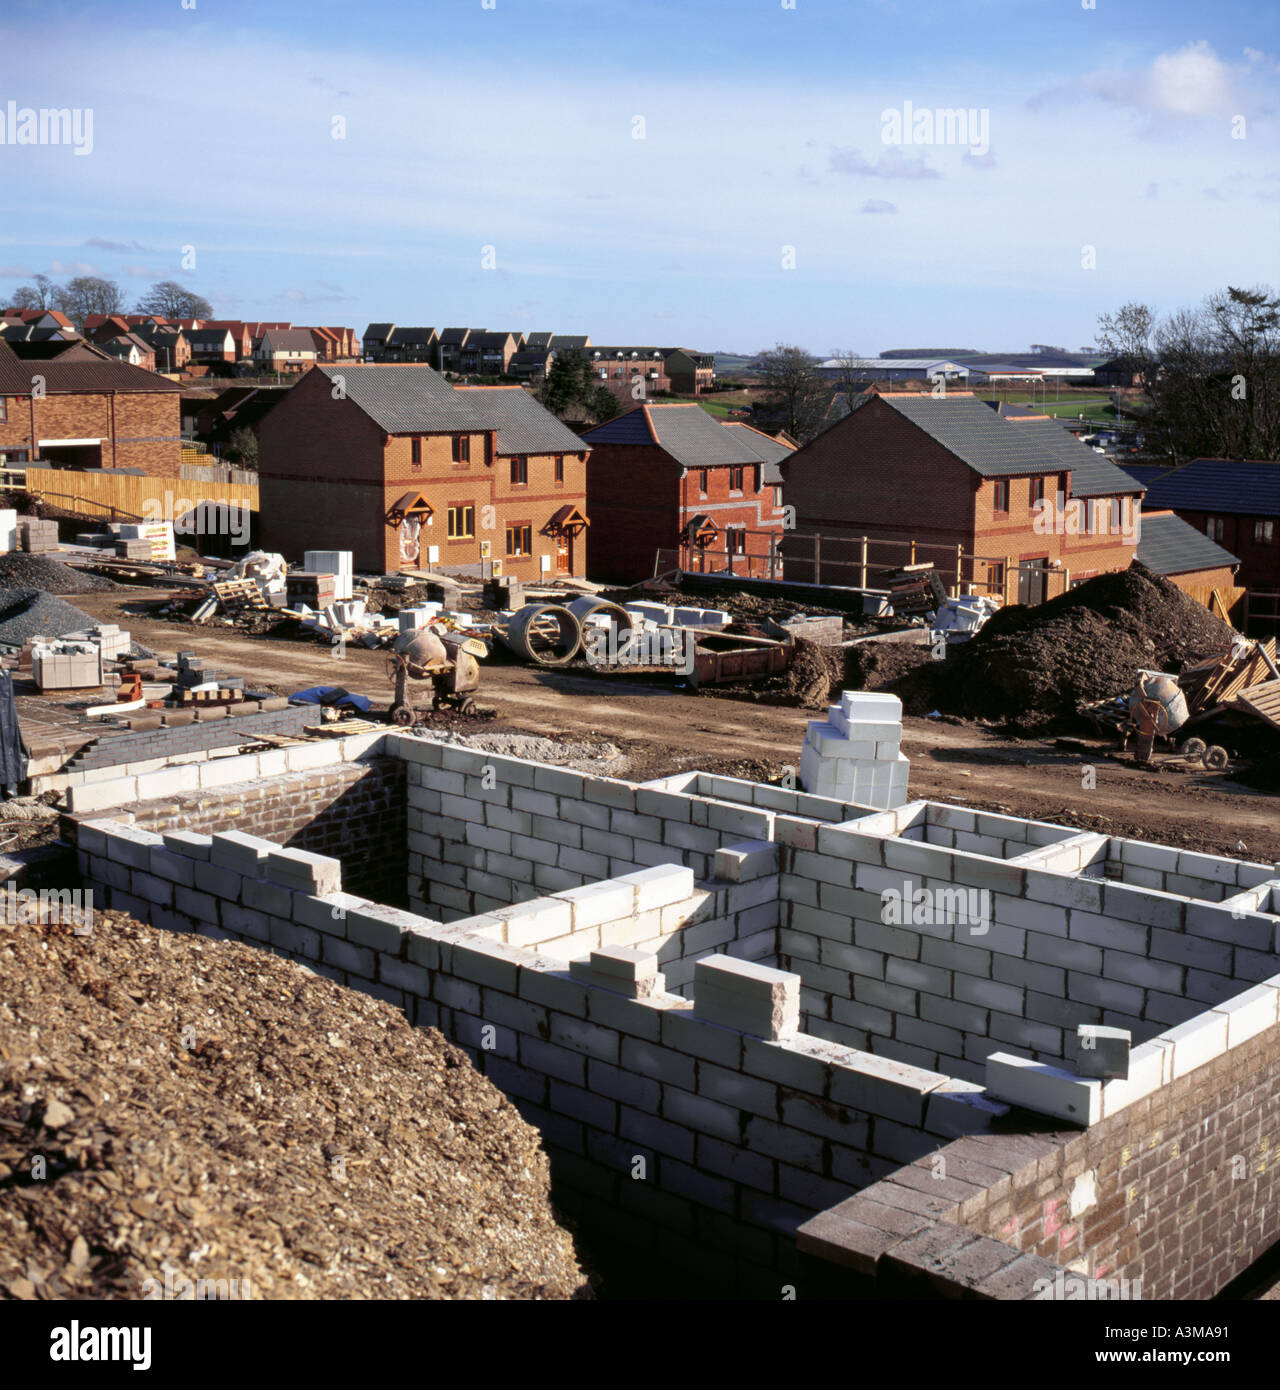 Développement de nouveaux logements à Plympton, Plymouth, Devon, Angleterre, Royaume-Uni. Banque D'Images